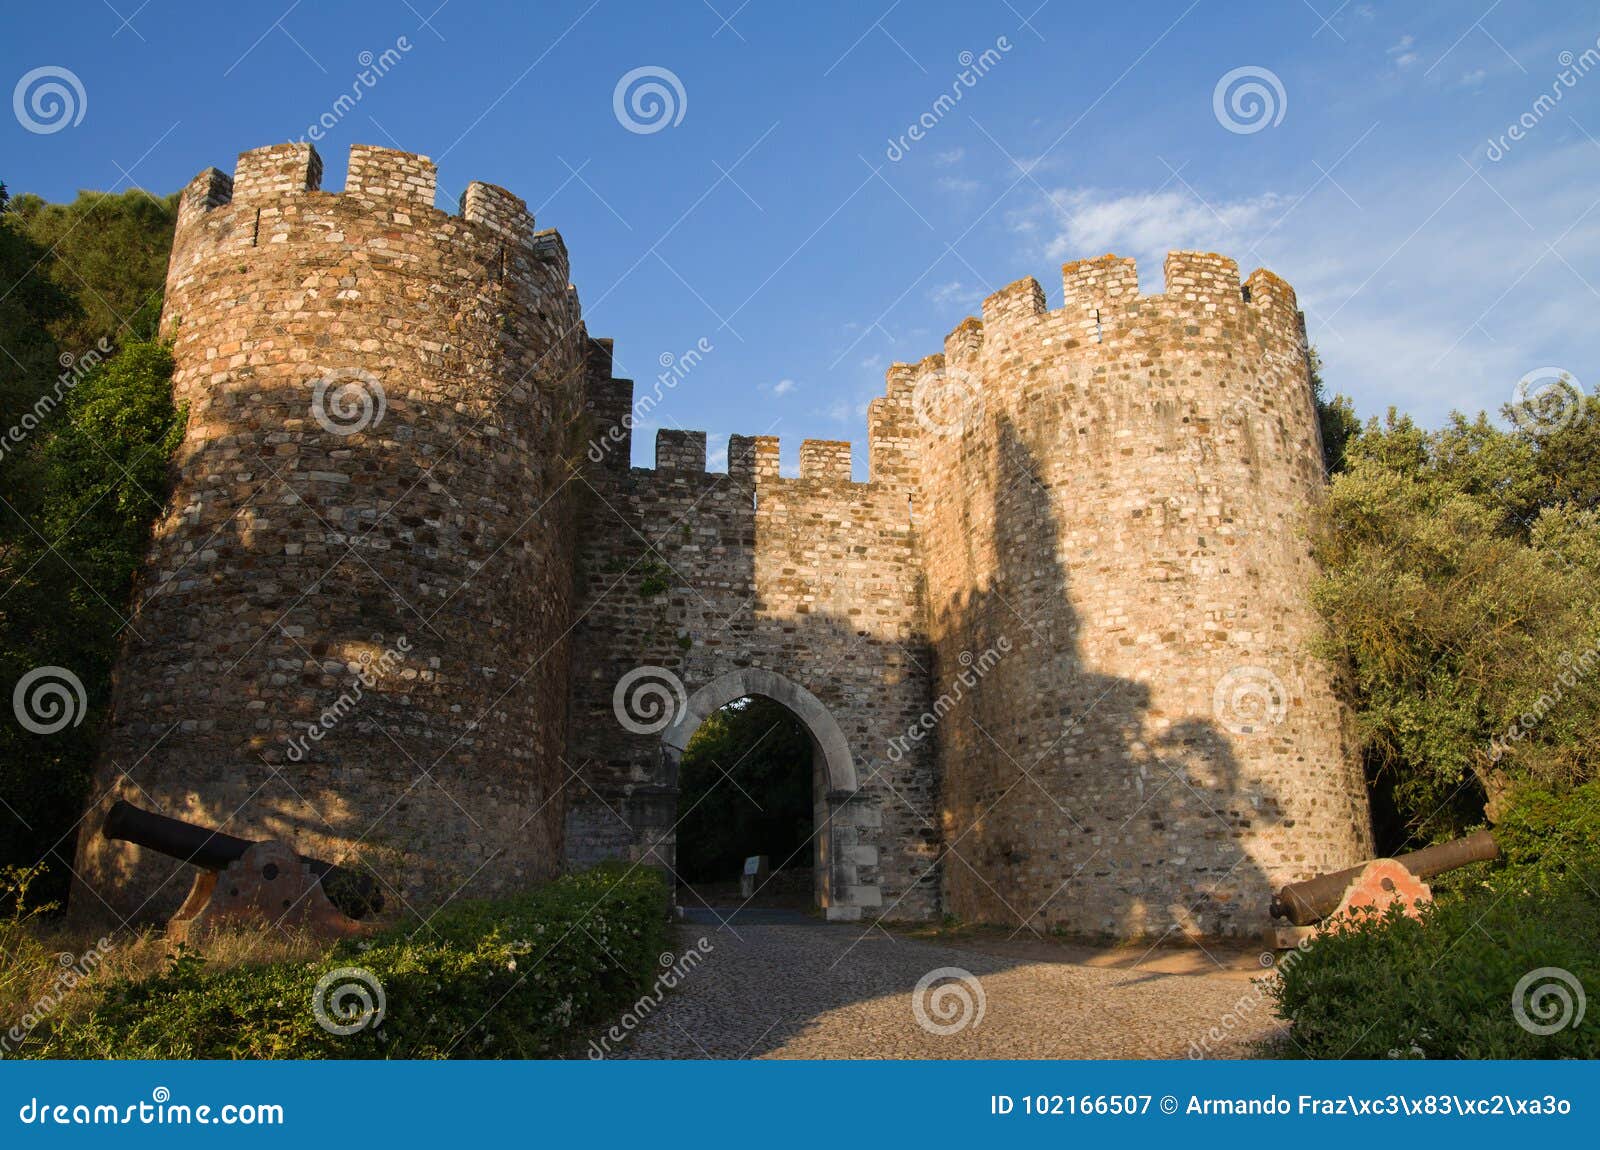 vila vicosa castle gateway and canons